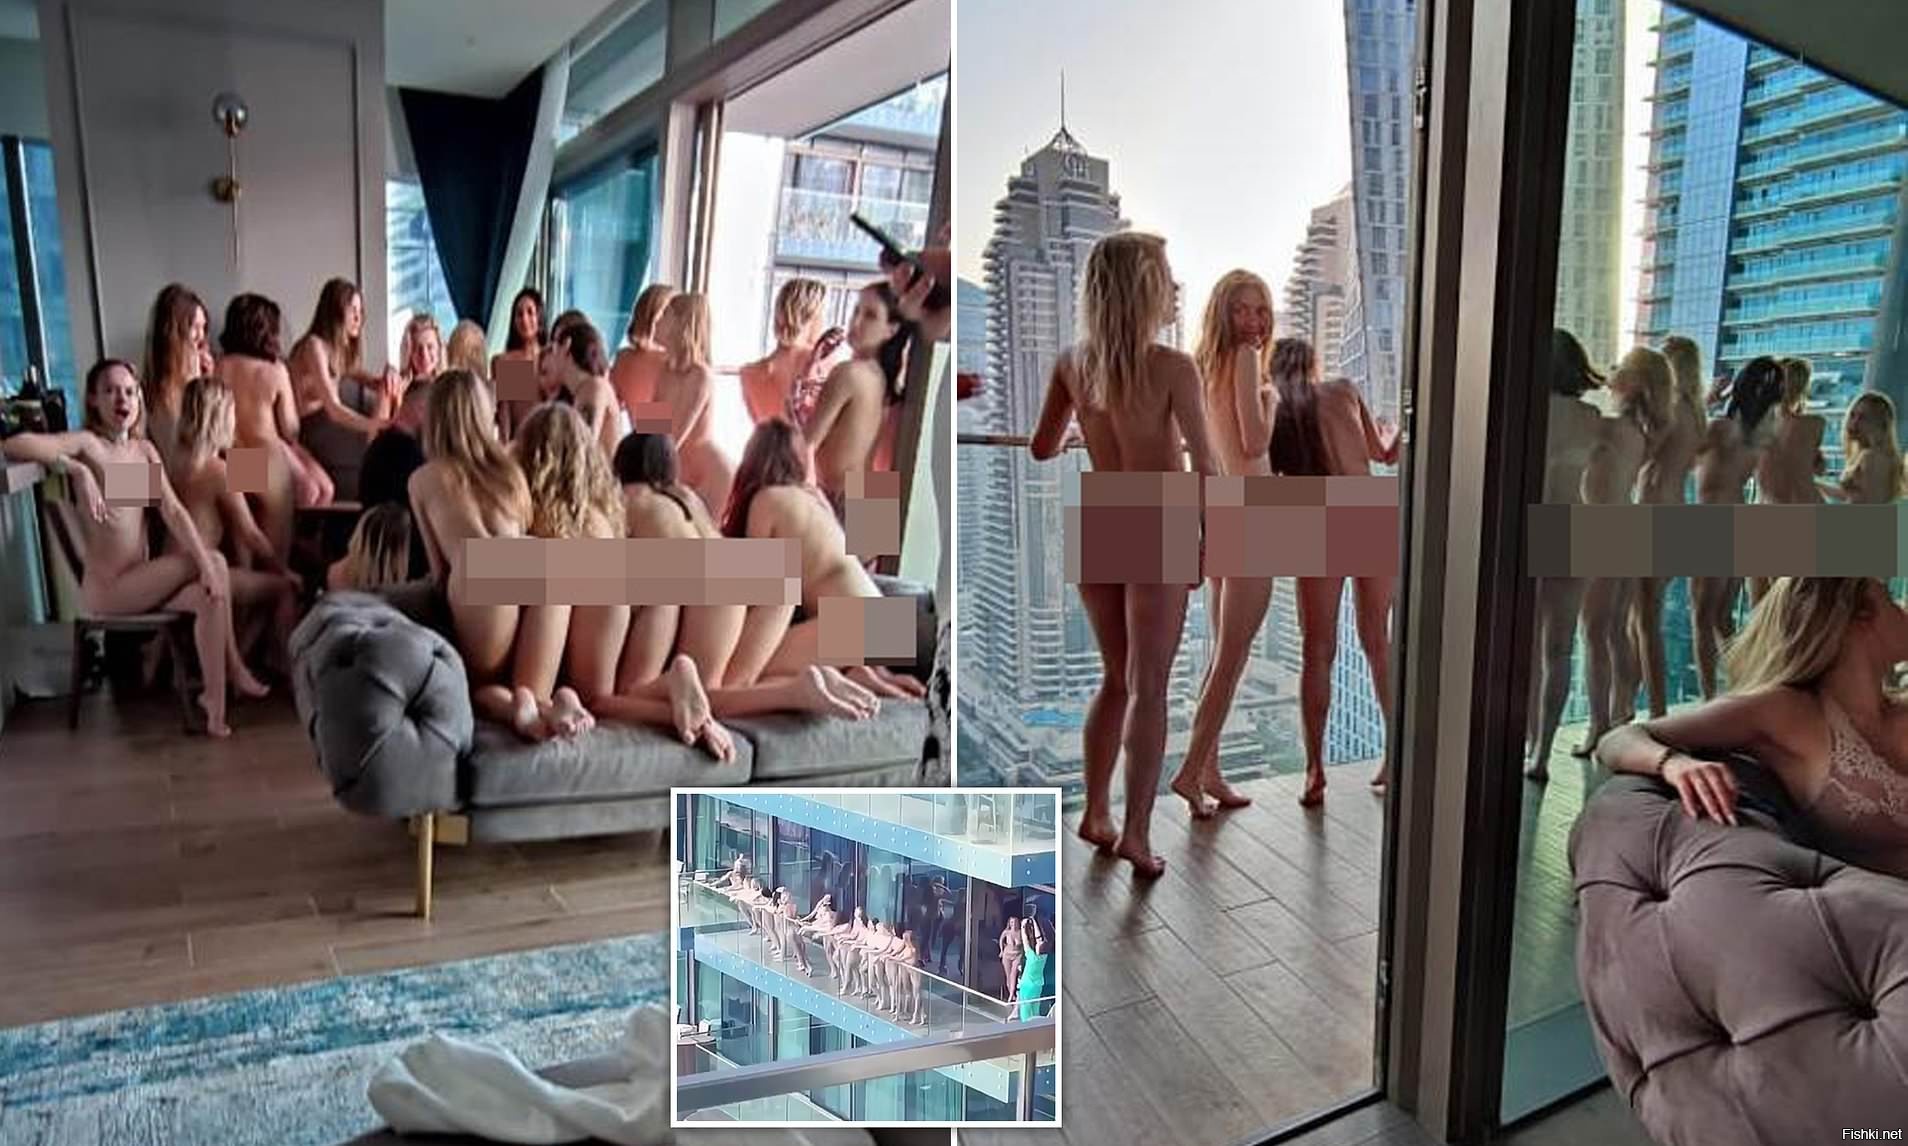 Полиция в Дубае арестовала 12 красоток, позировавших обнаженными на балконе отеля.